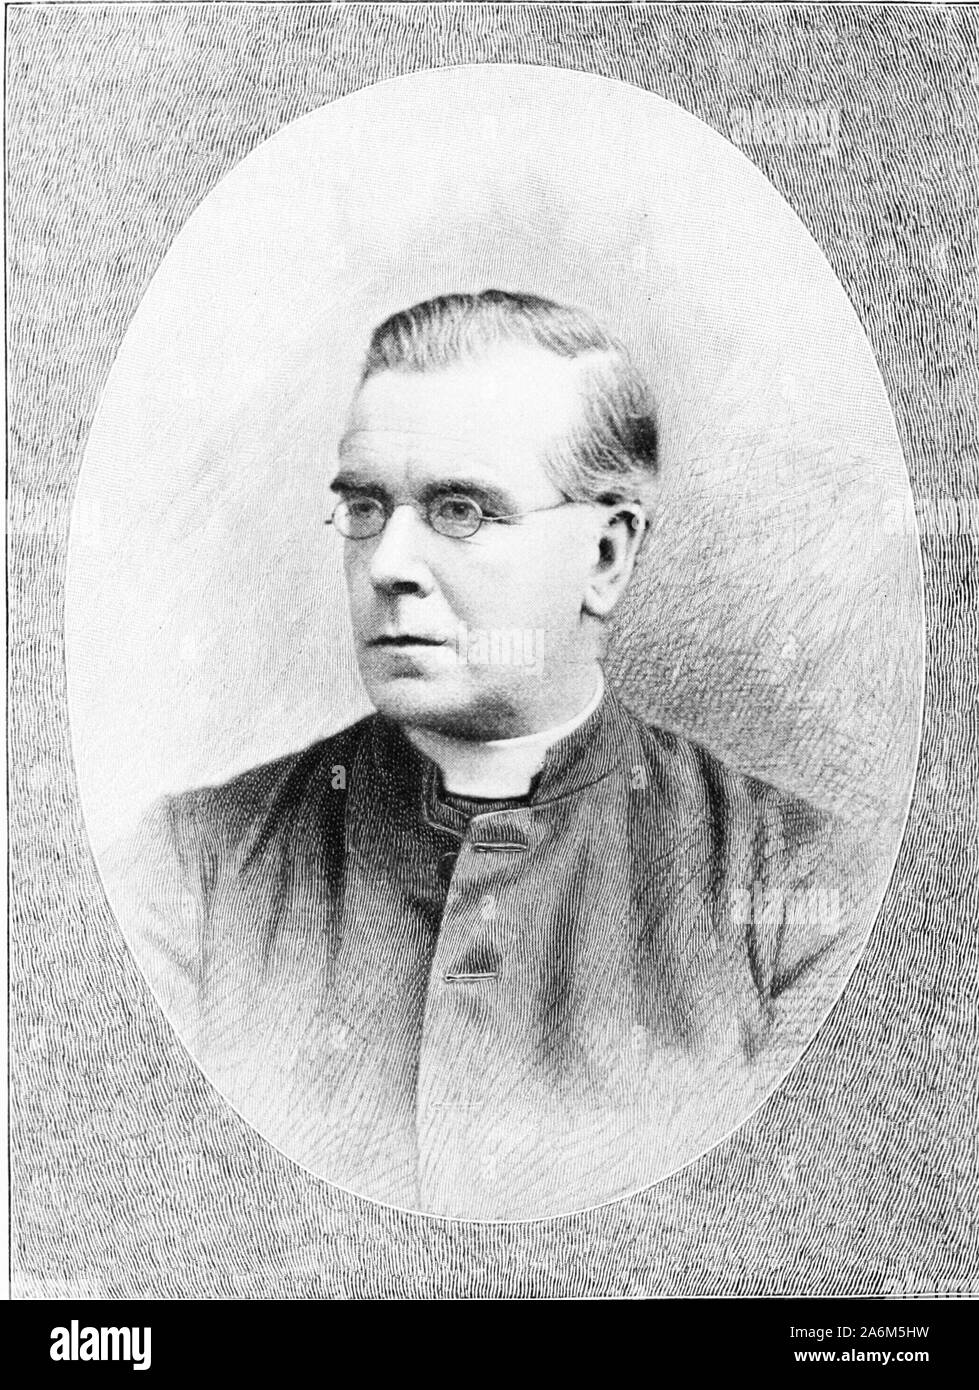 Stephen Joseph Perry (1833-1889) englischer Jesuit und Astronom, als Teilnehmer an wissenschaftlichen Expeditionen bekannt Stockfoto